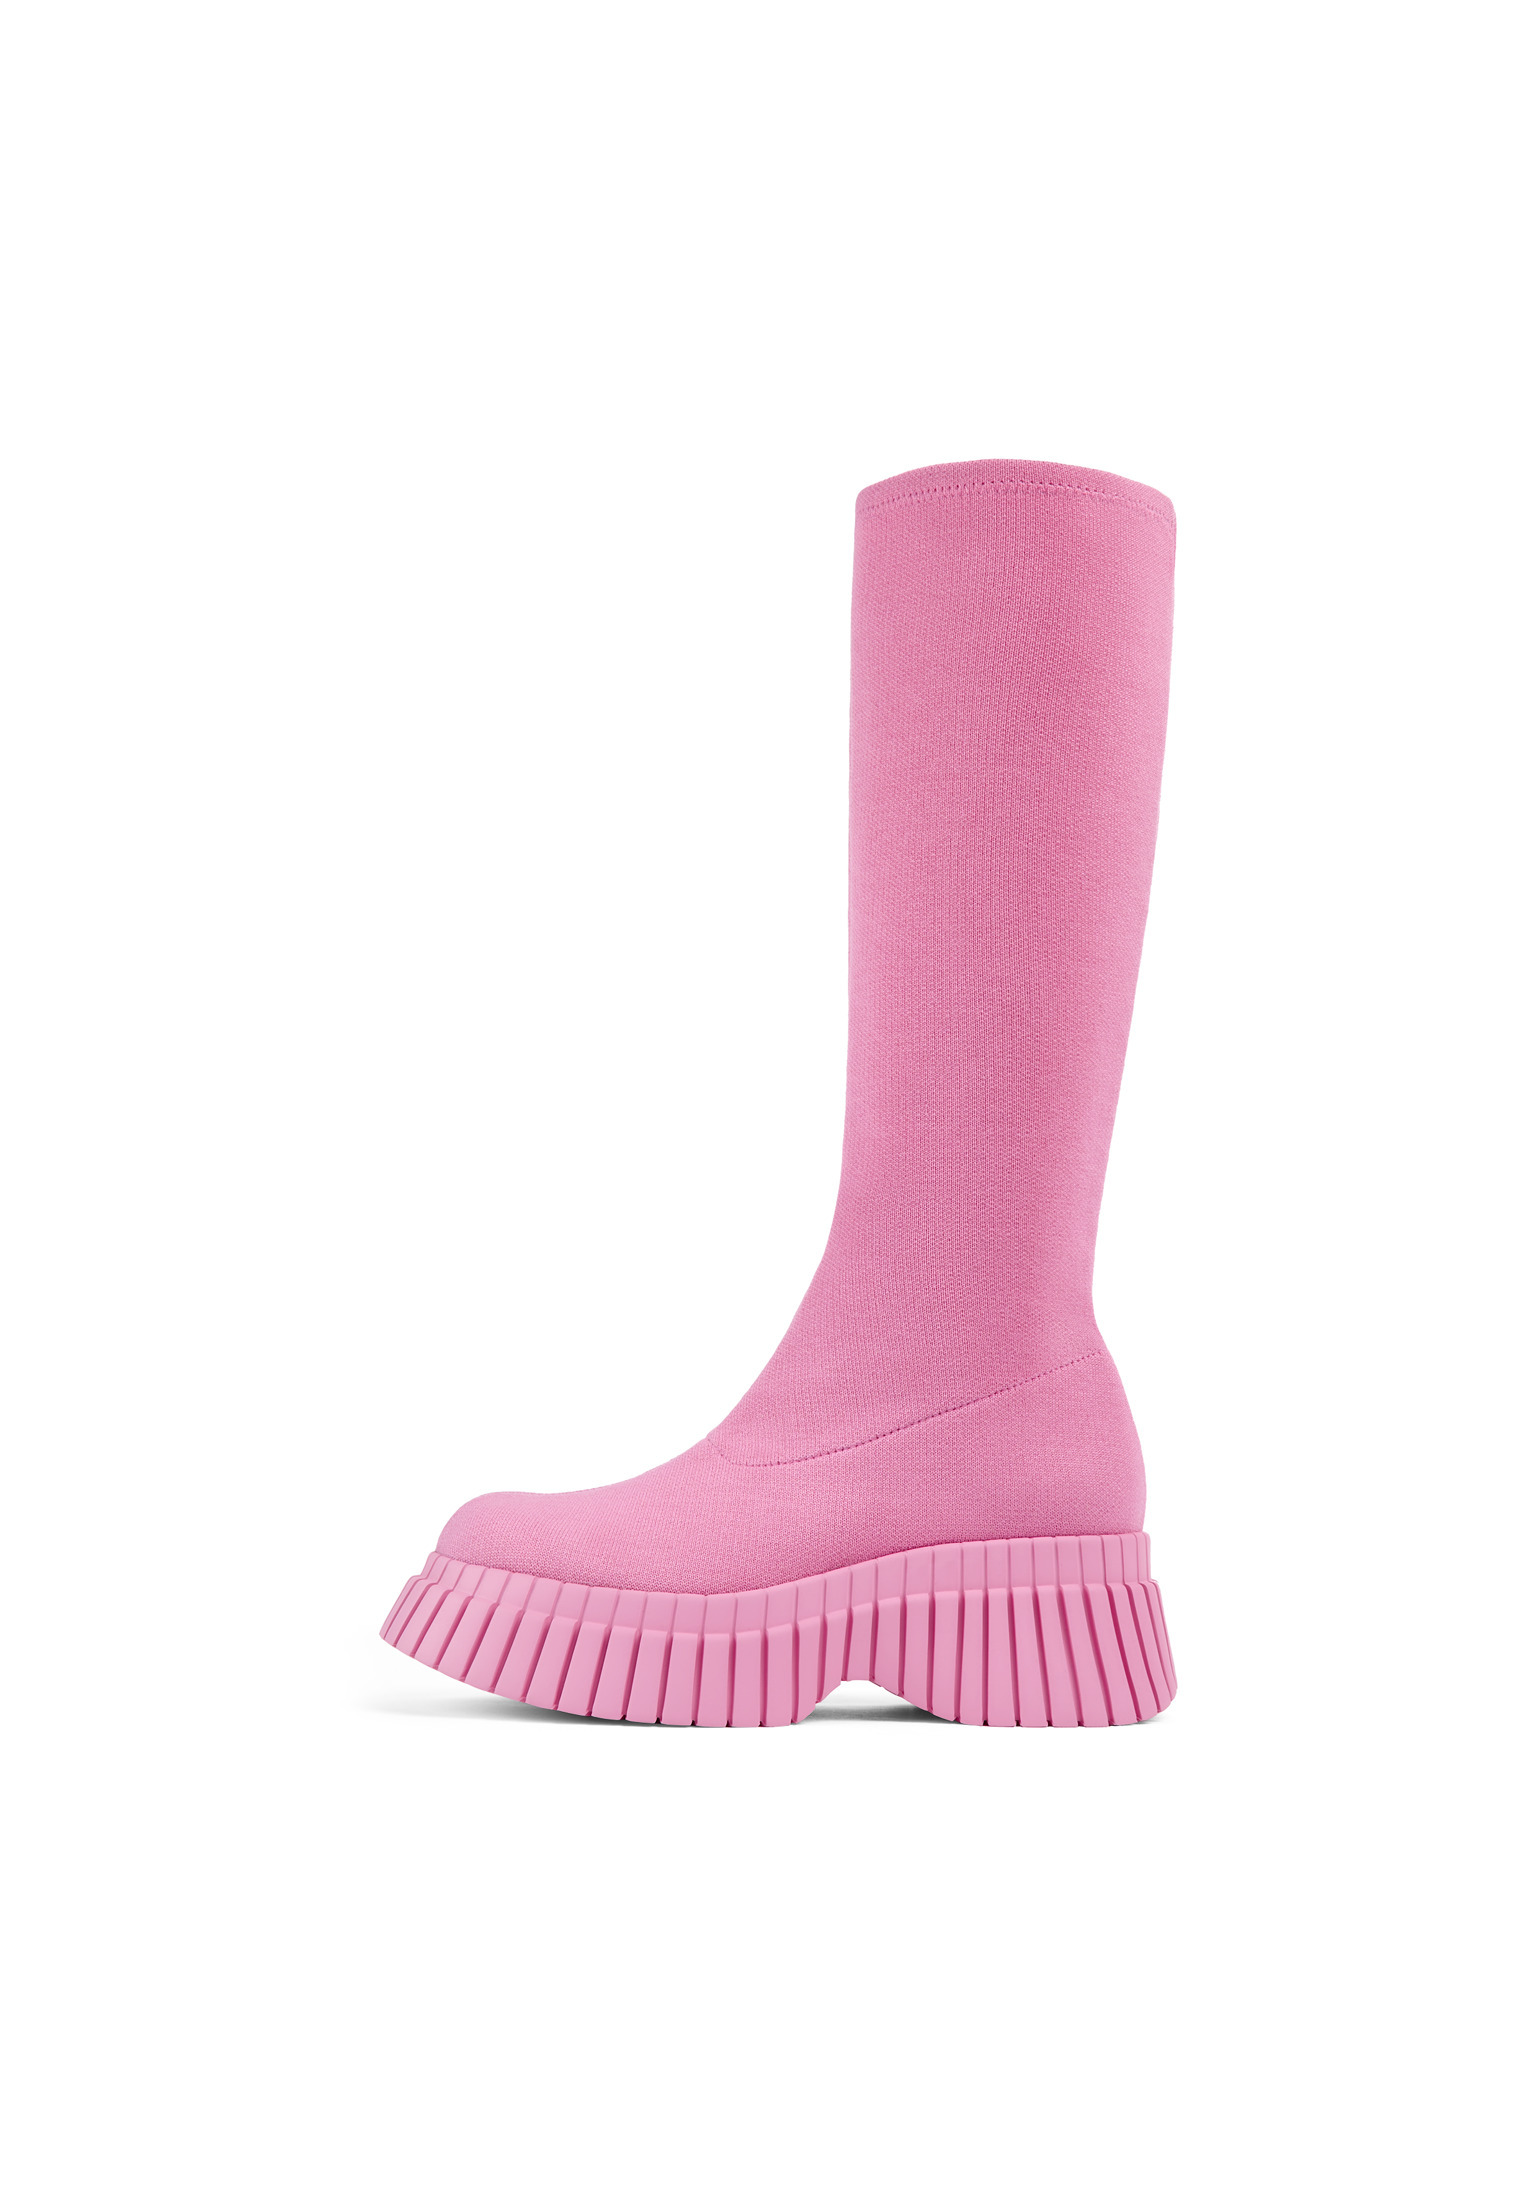 Ботинки Camper Stiefel BCN, розовый